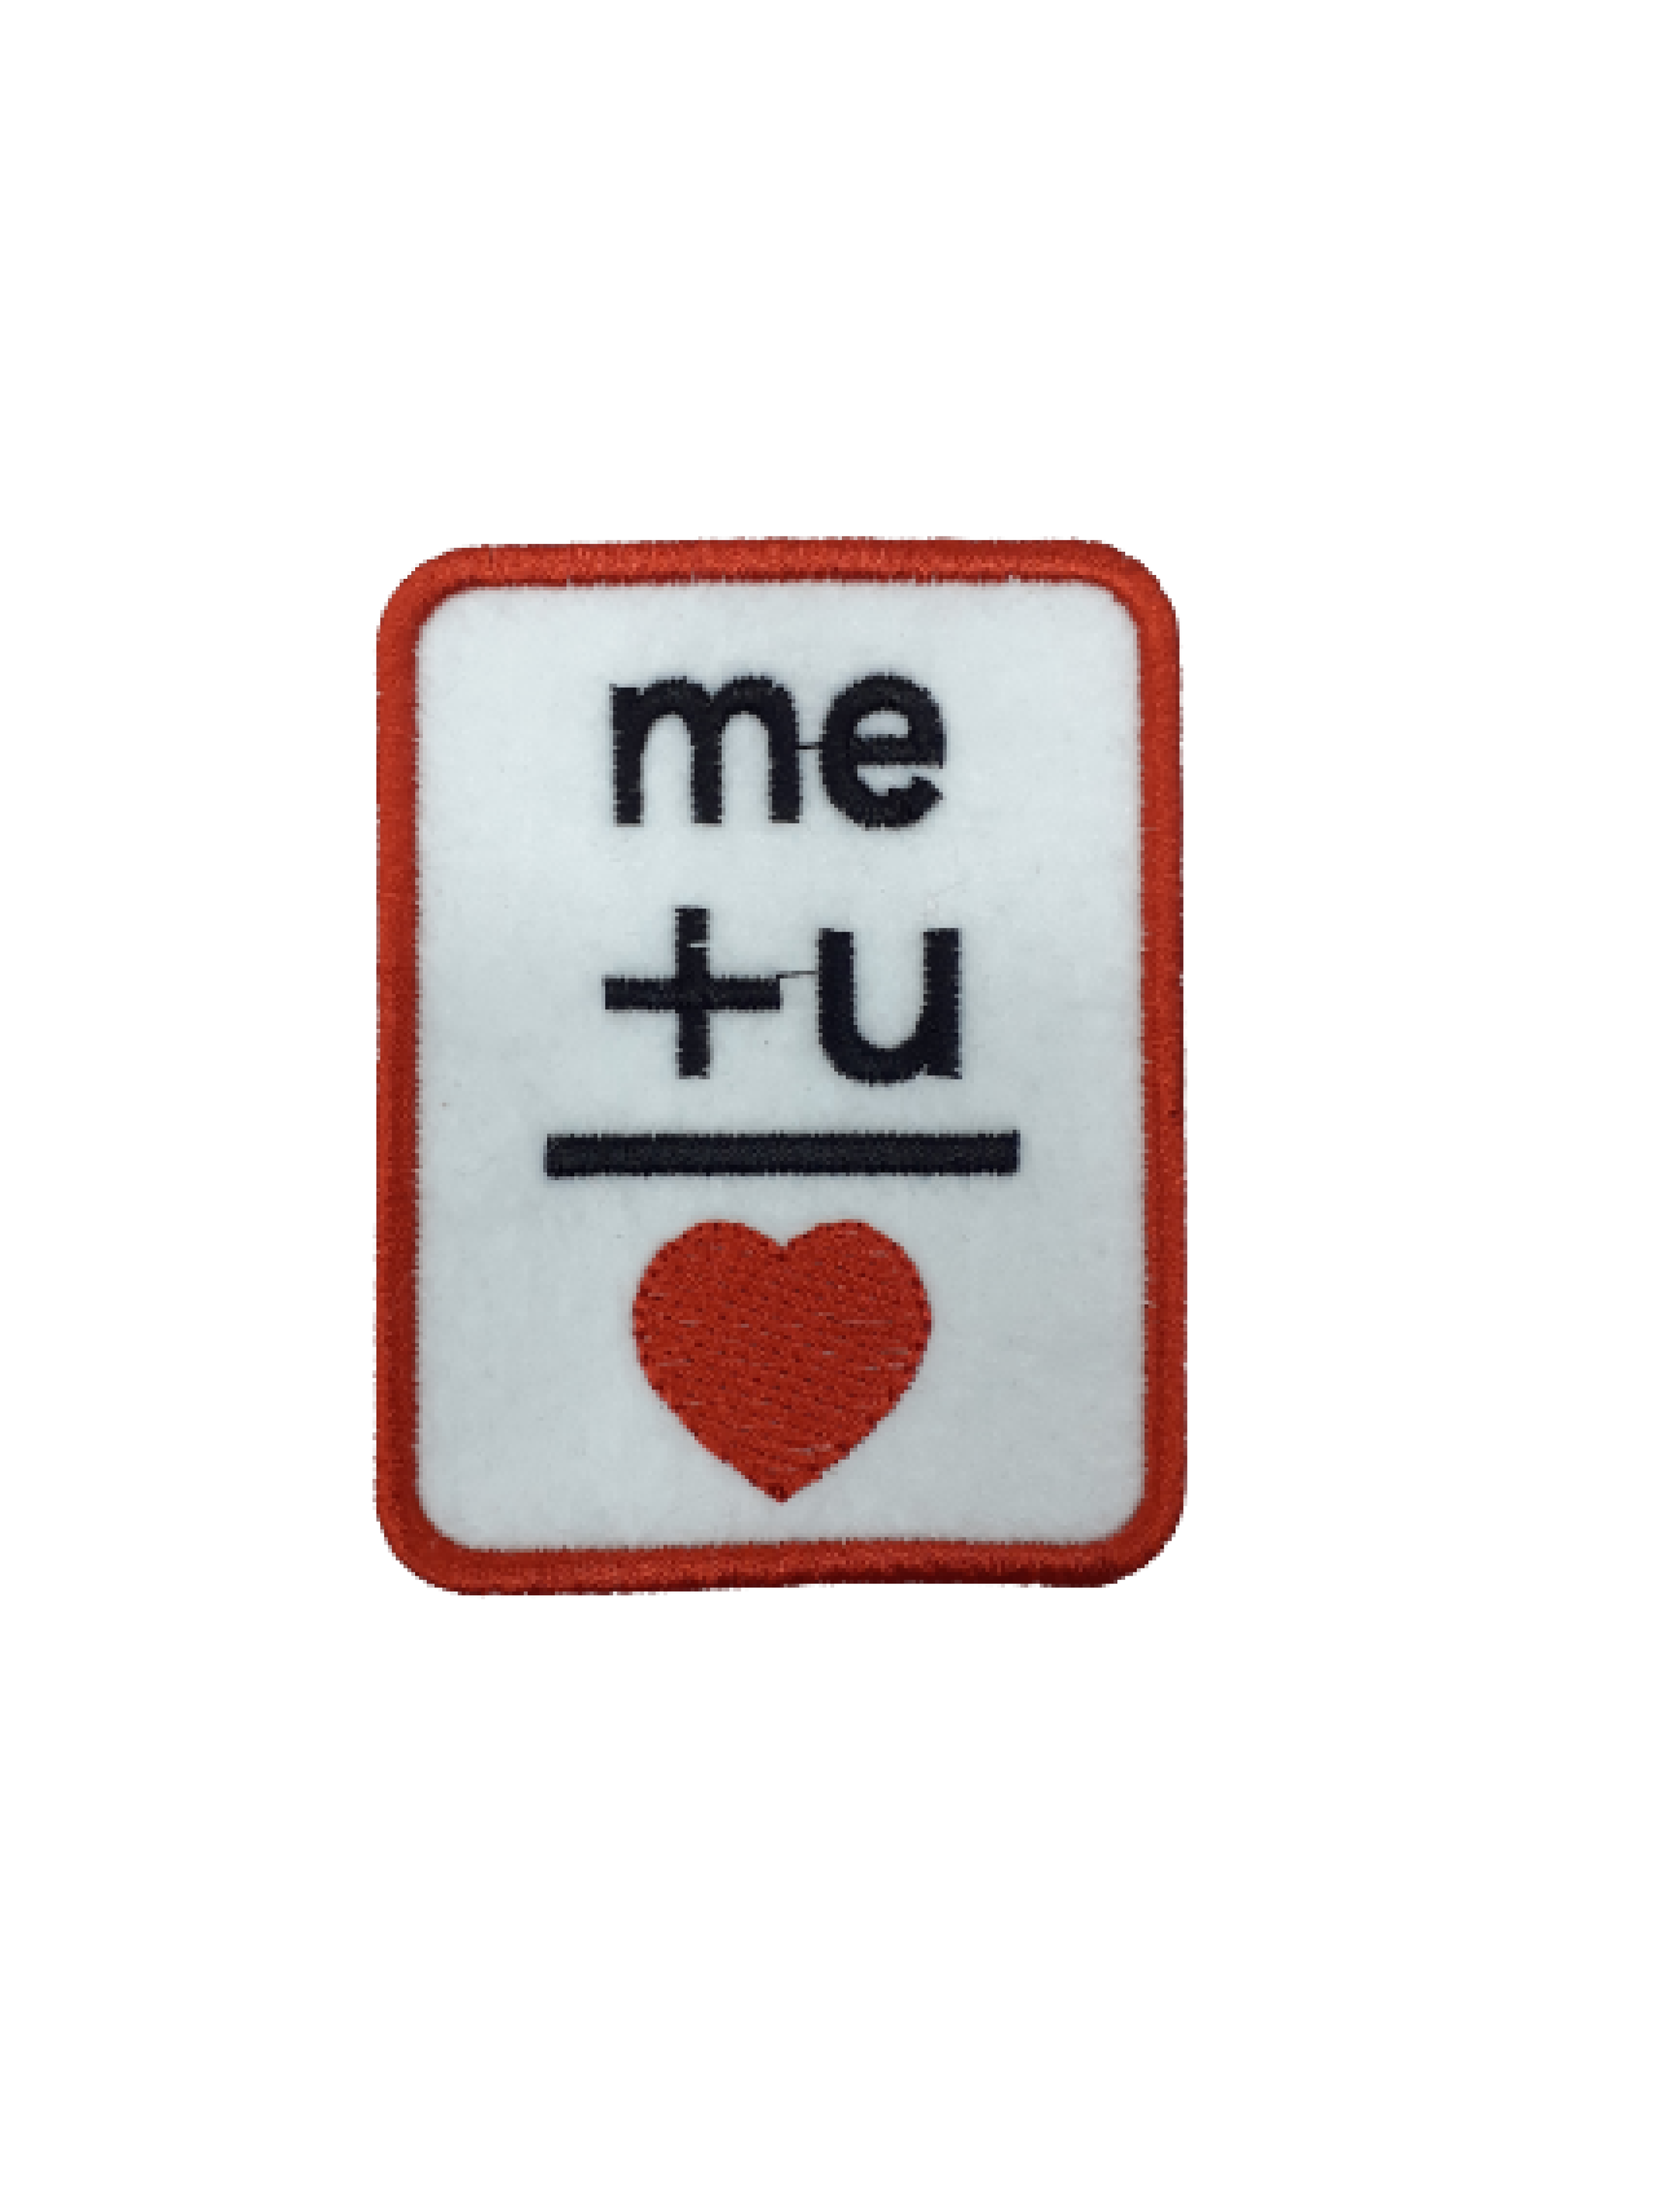 Me + u = Love